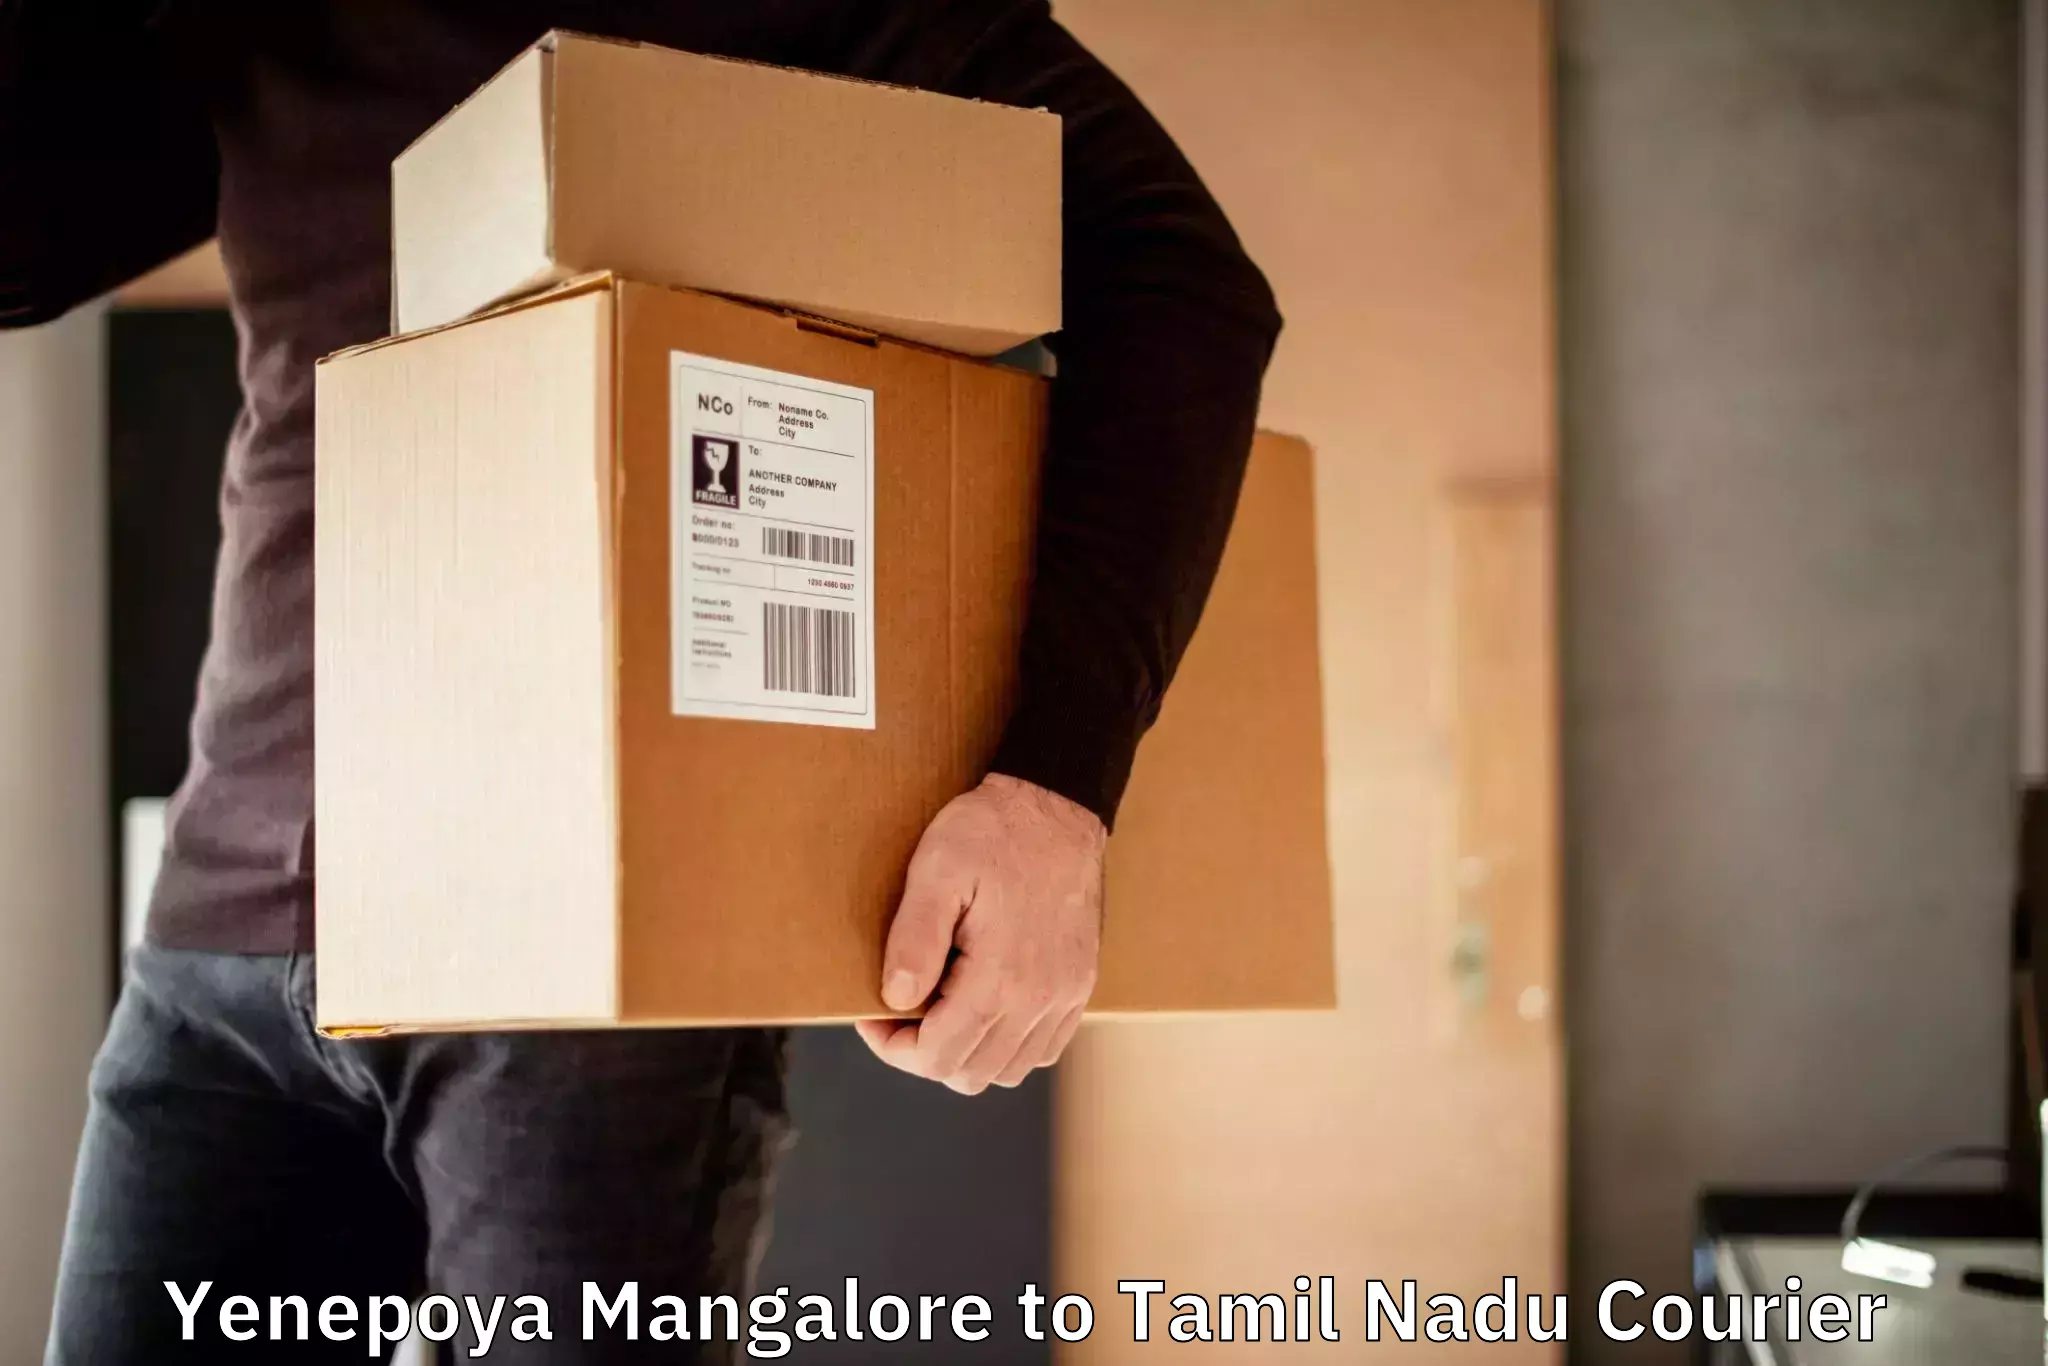 Tailored shipping plans Yenepoya Mangalore to Anthiyur